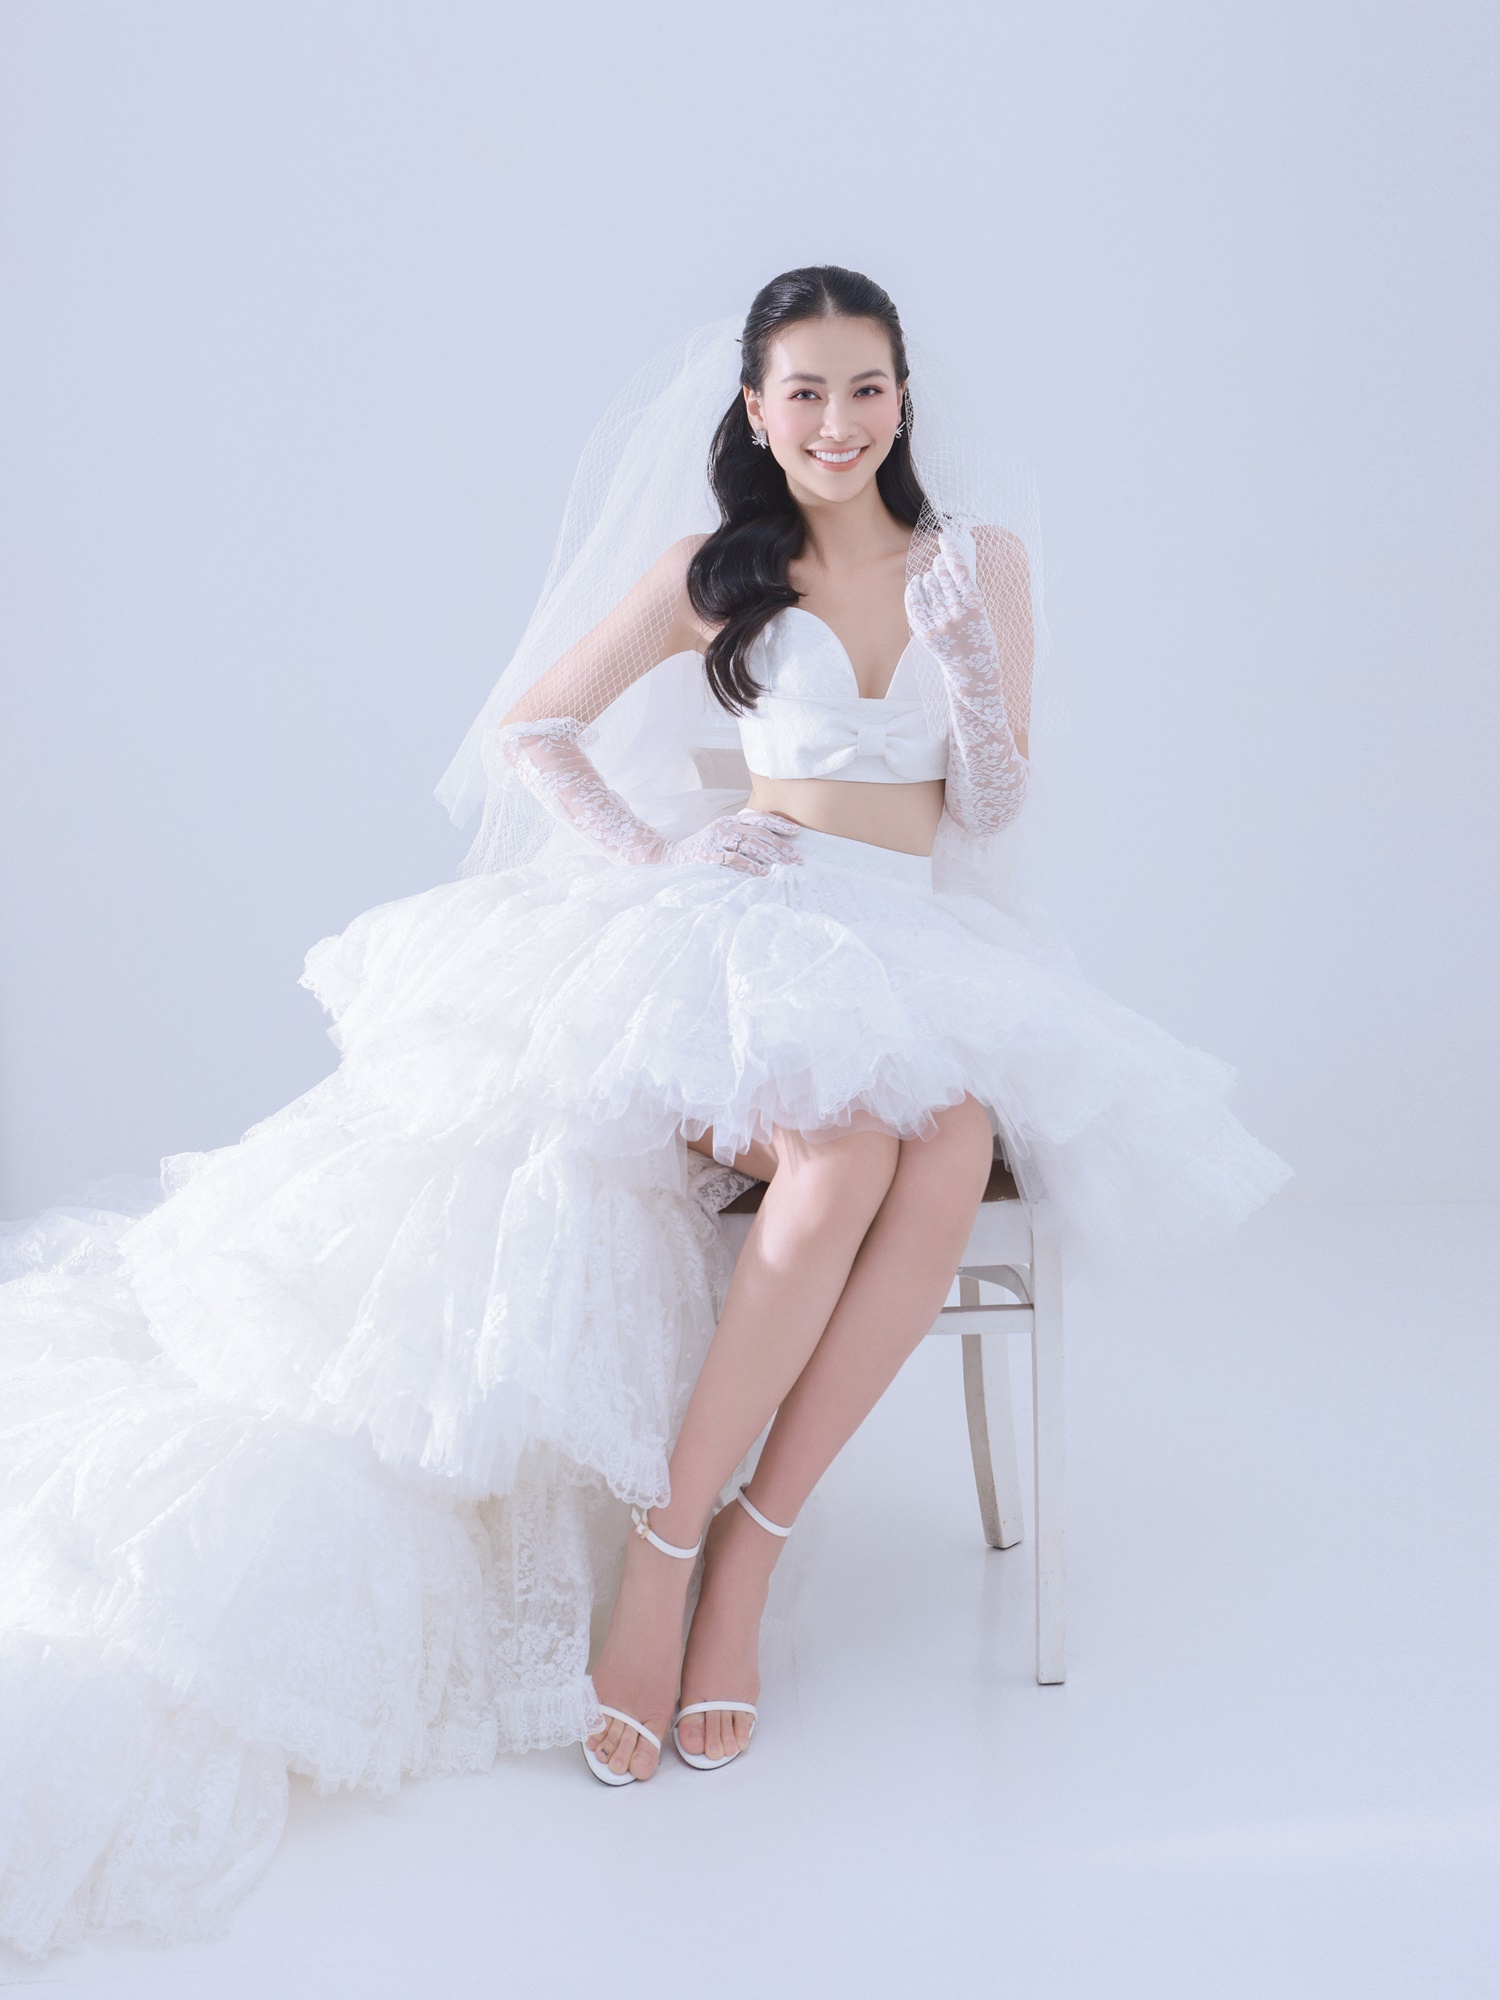 Những mẫu váy cưới được cách điệu với dáng áo croptop kết hợp cùng chân váy xòe lạ mắt giúp Phương Khánh trở nên gợi cảm xen lẫn nét cá tính.